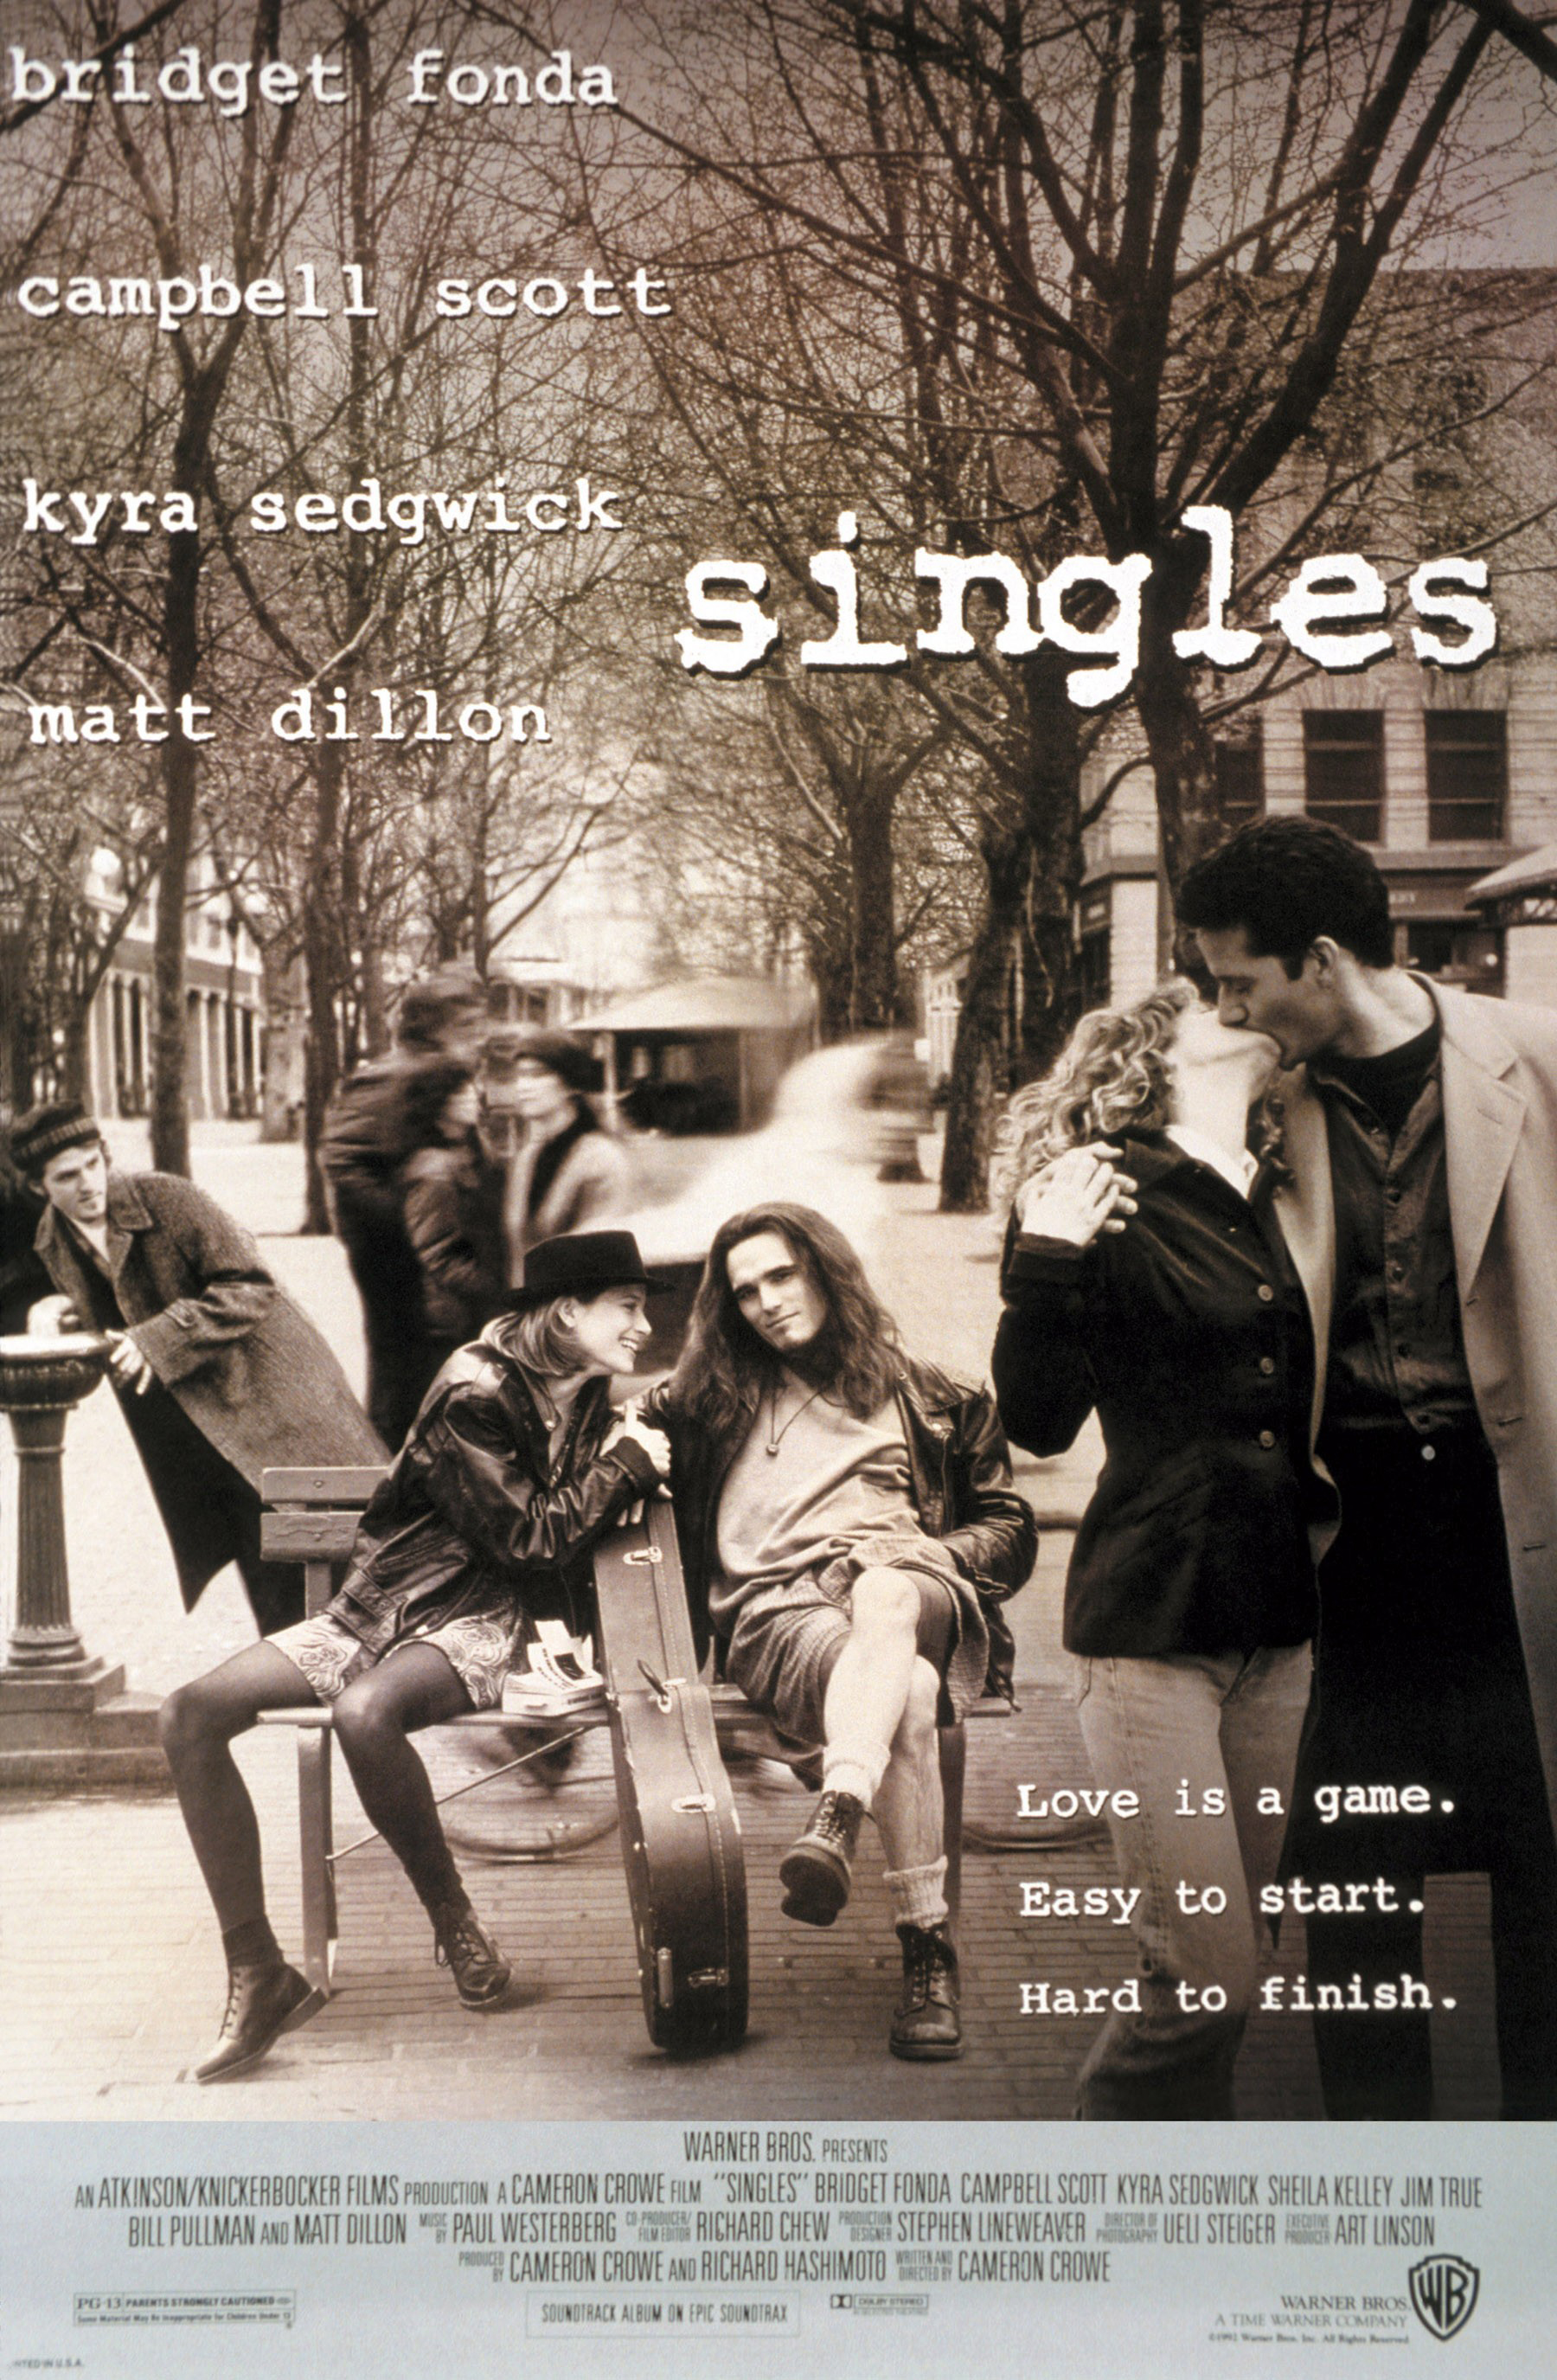 SINGLES, Bridget Fonda, Matt Dillon, Kyra Sedgwick, Campbell Scott, 1992.